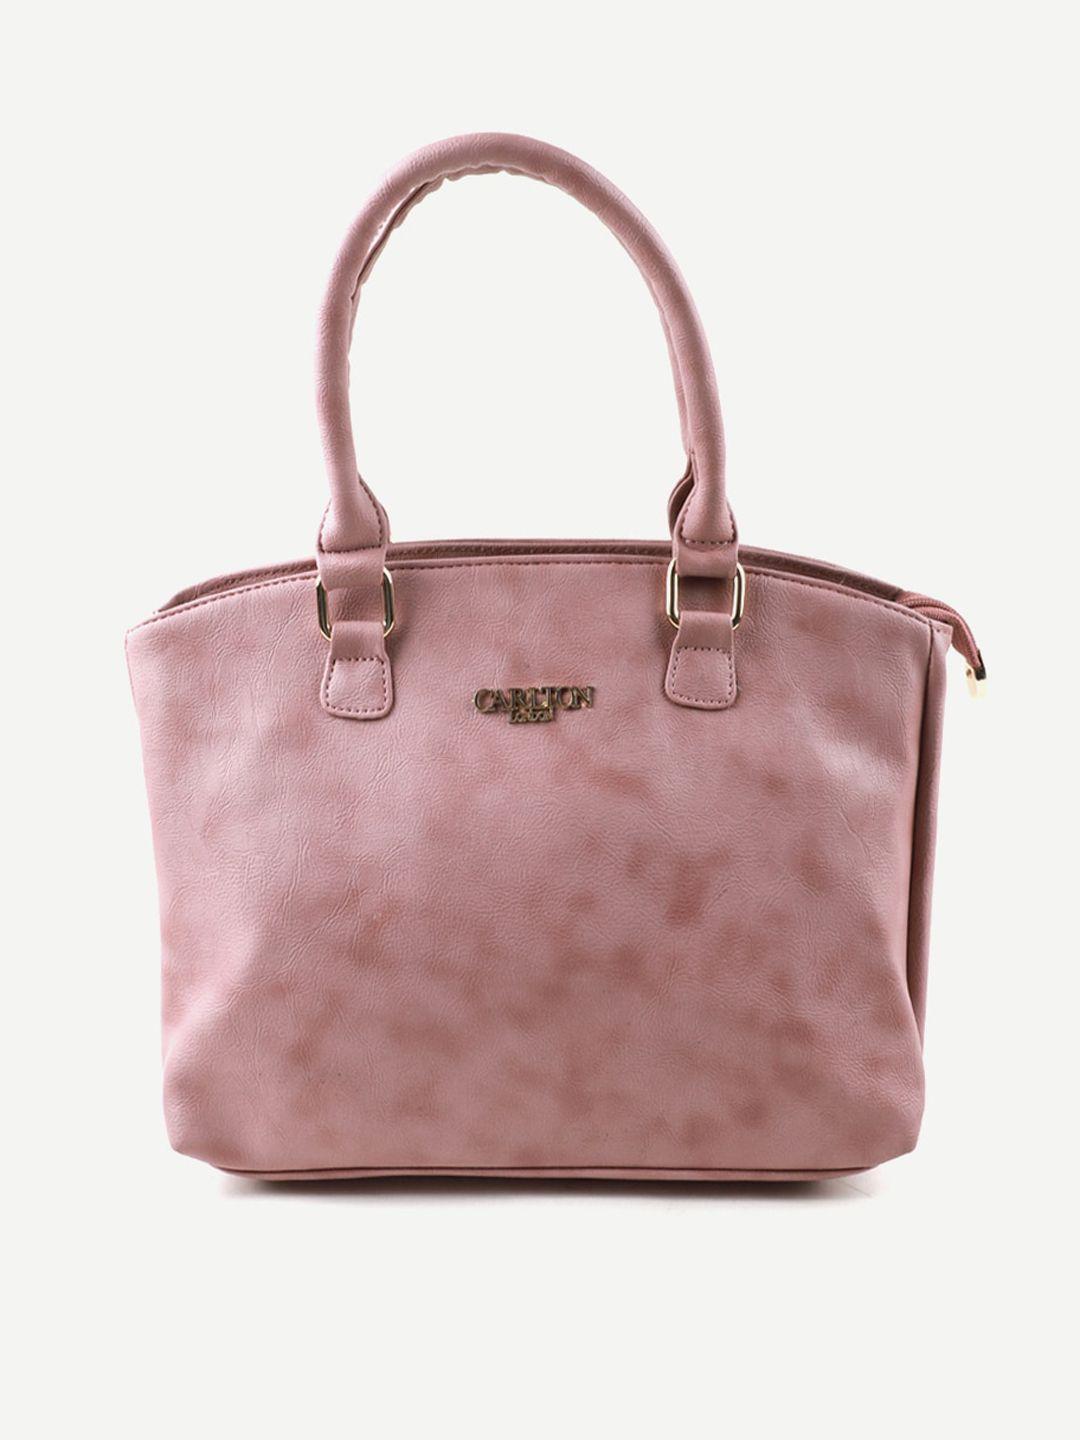 carlton london pink structured handheld bag